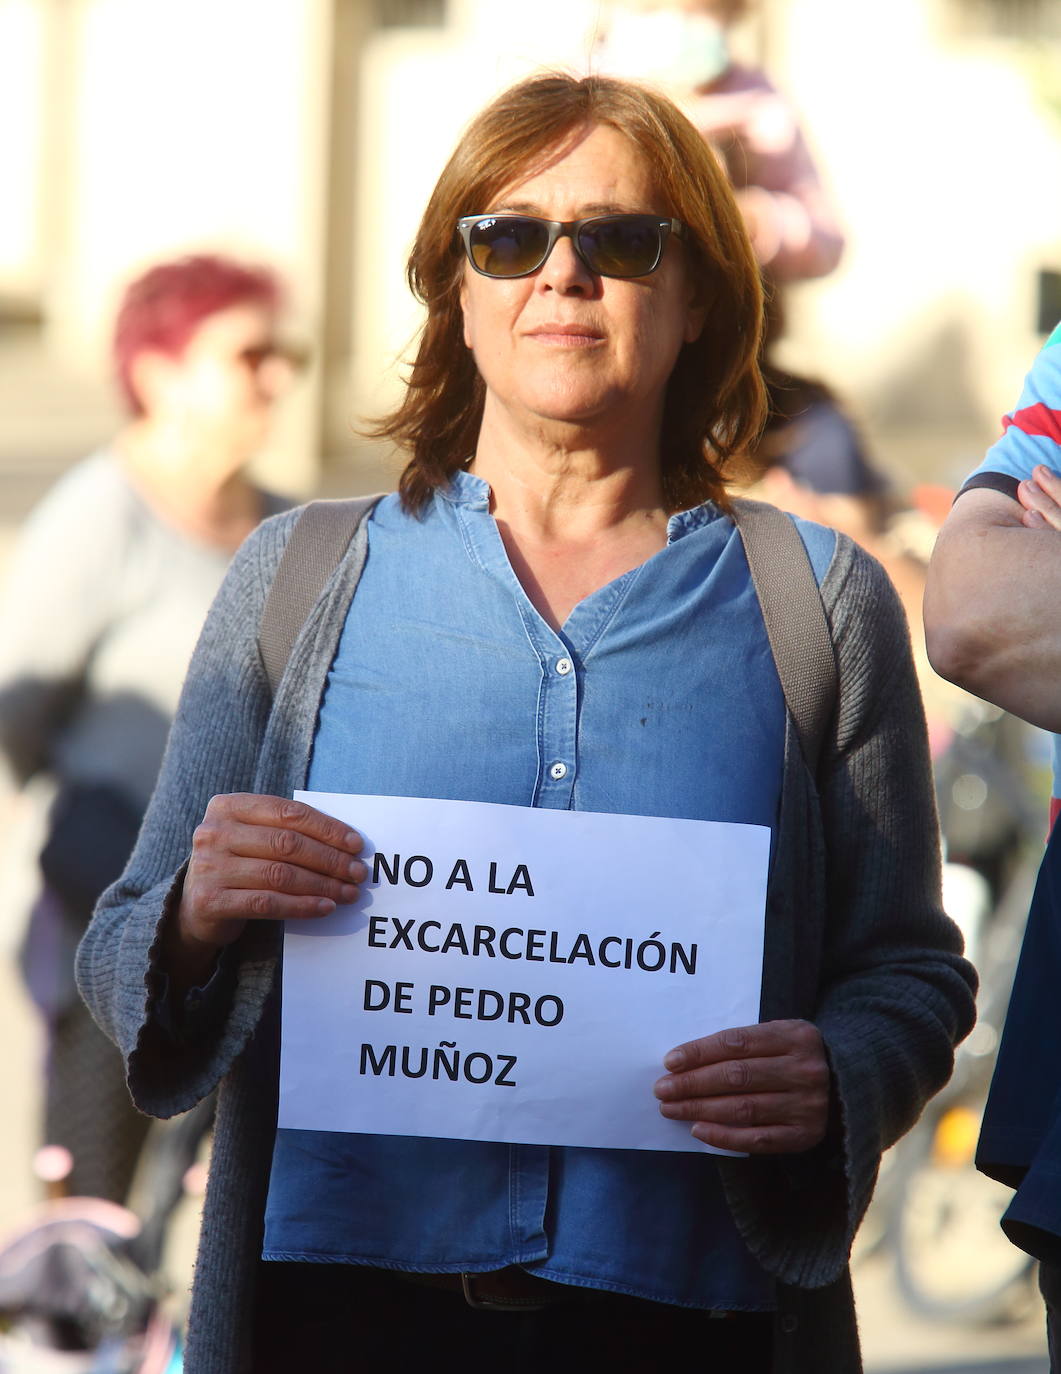 Concentración de la Plataforma Contra las Violencias Machistas del Bierzo y Laciana contra la puesta en libertad provisional del exconcejal de Ponferrada Pedro Muñoz